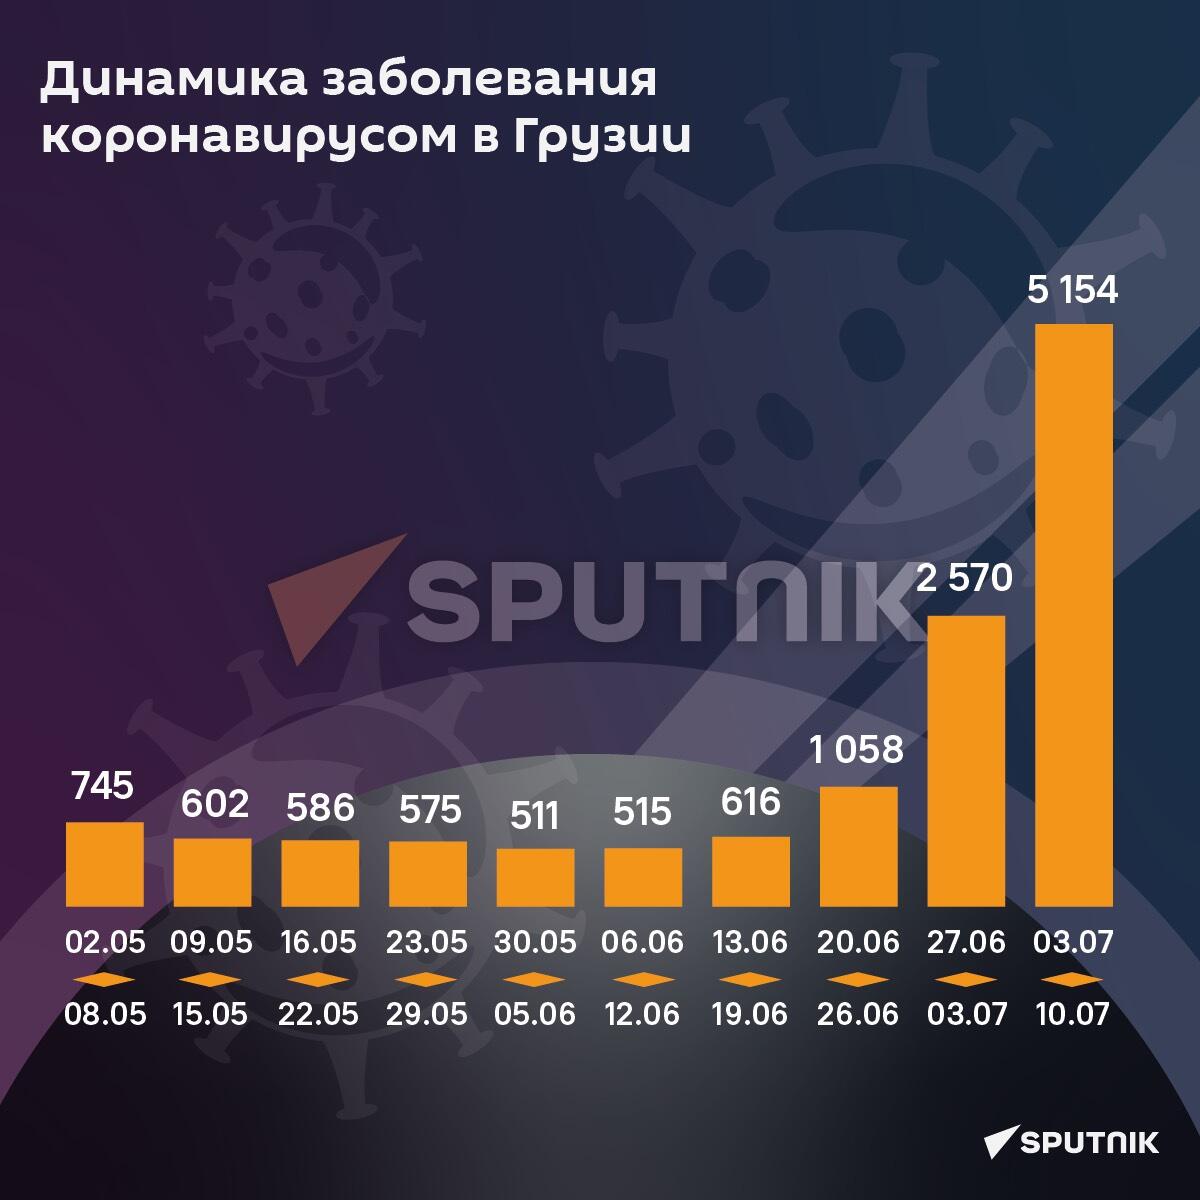 Динамика заболевания коронавирусом: май - июль 2022 - Sputnik Грузия